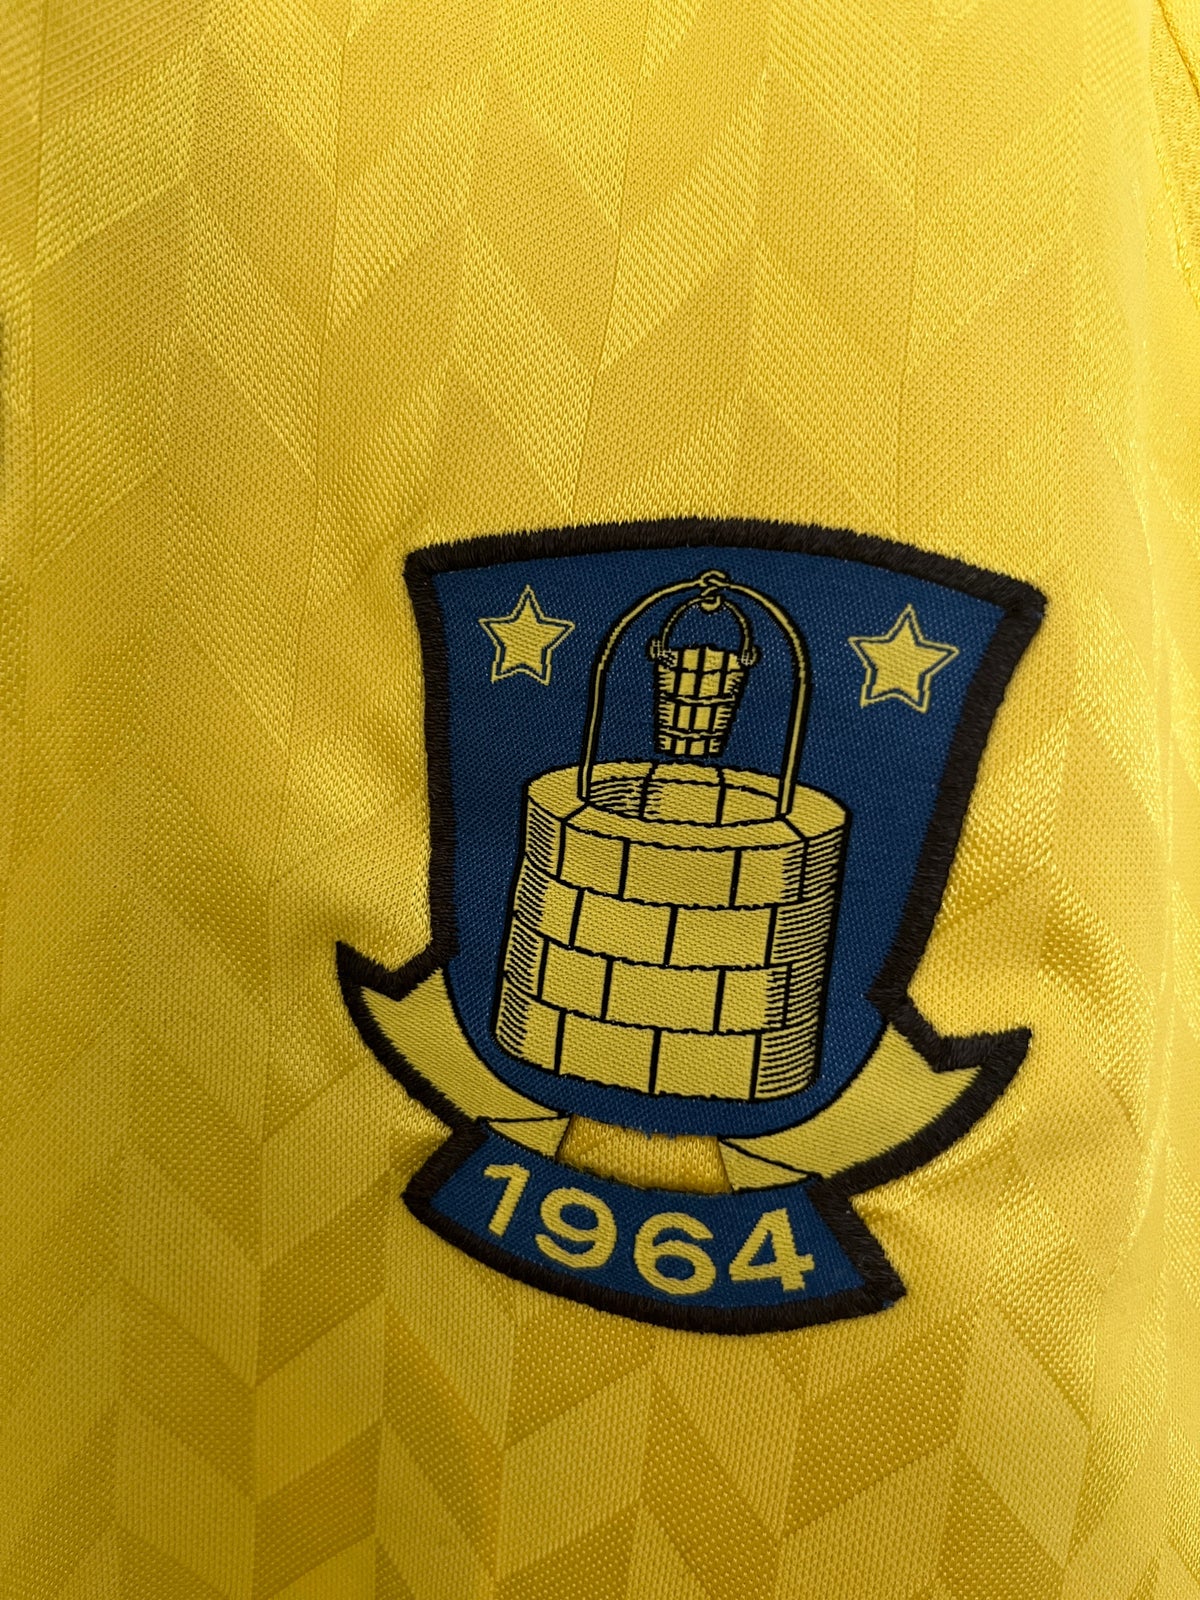 Fodboldtrøje, Brøndby IF trøje 2012-2013, Hummel